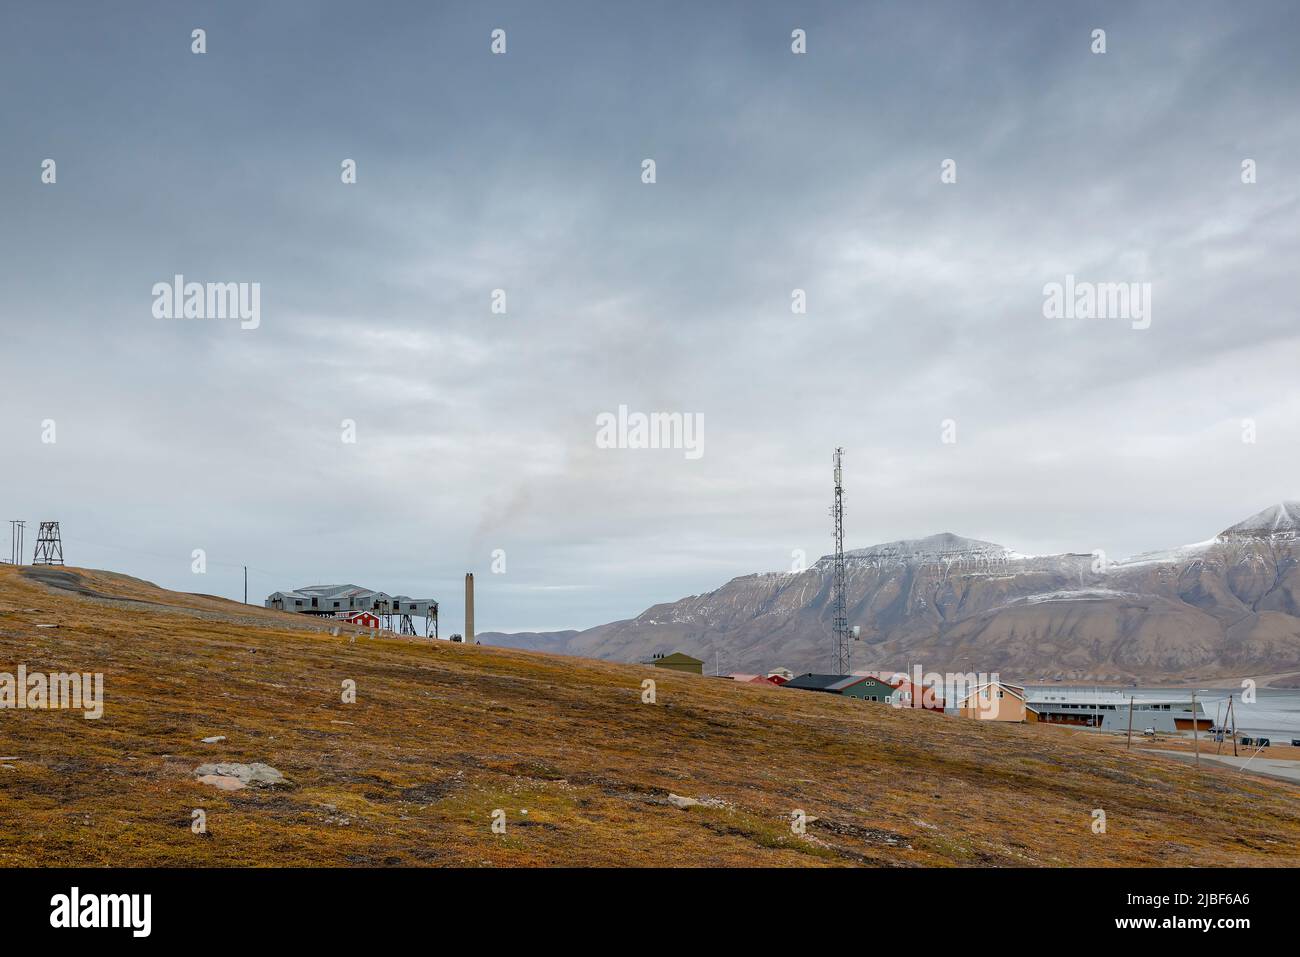 Mining village on mountain in Svalbard, Norway Stock Photo